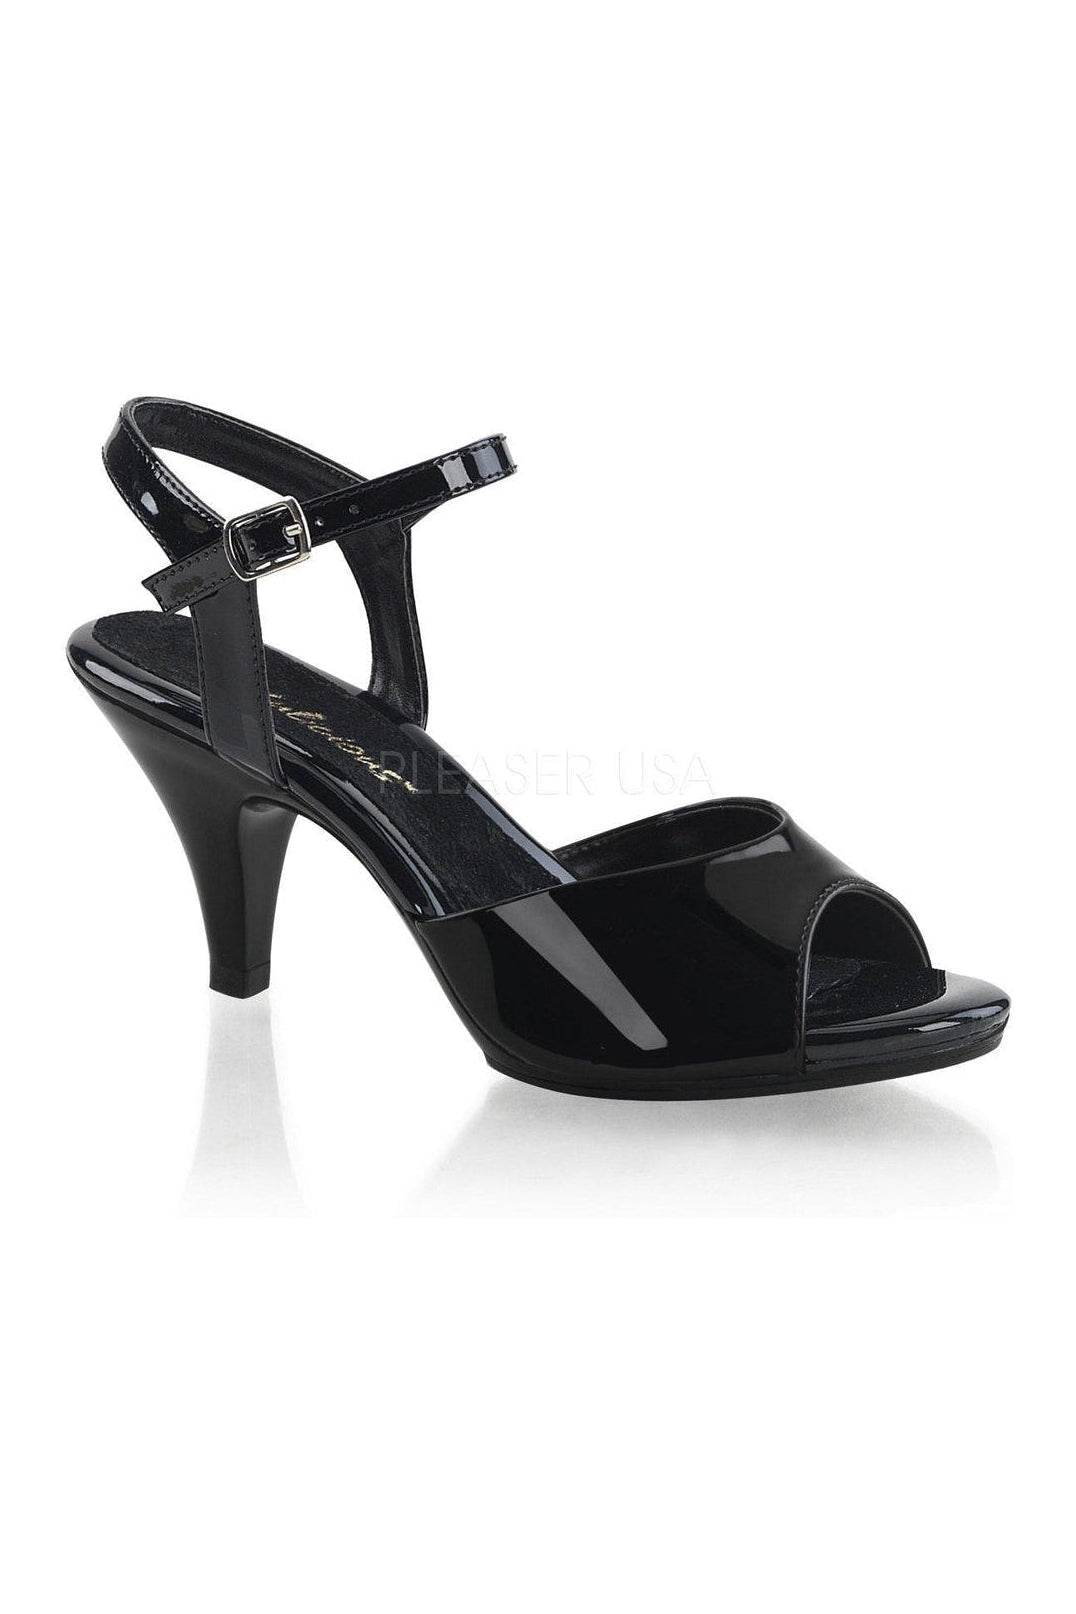 BELLE-309 Sandal | Black Patent-Fabulicious-Black-Sandals-SEXYSHOES.COM